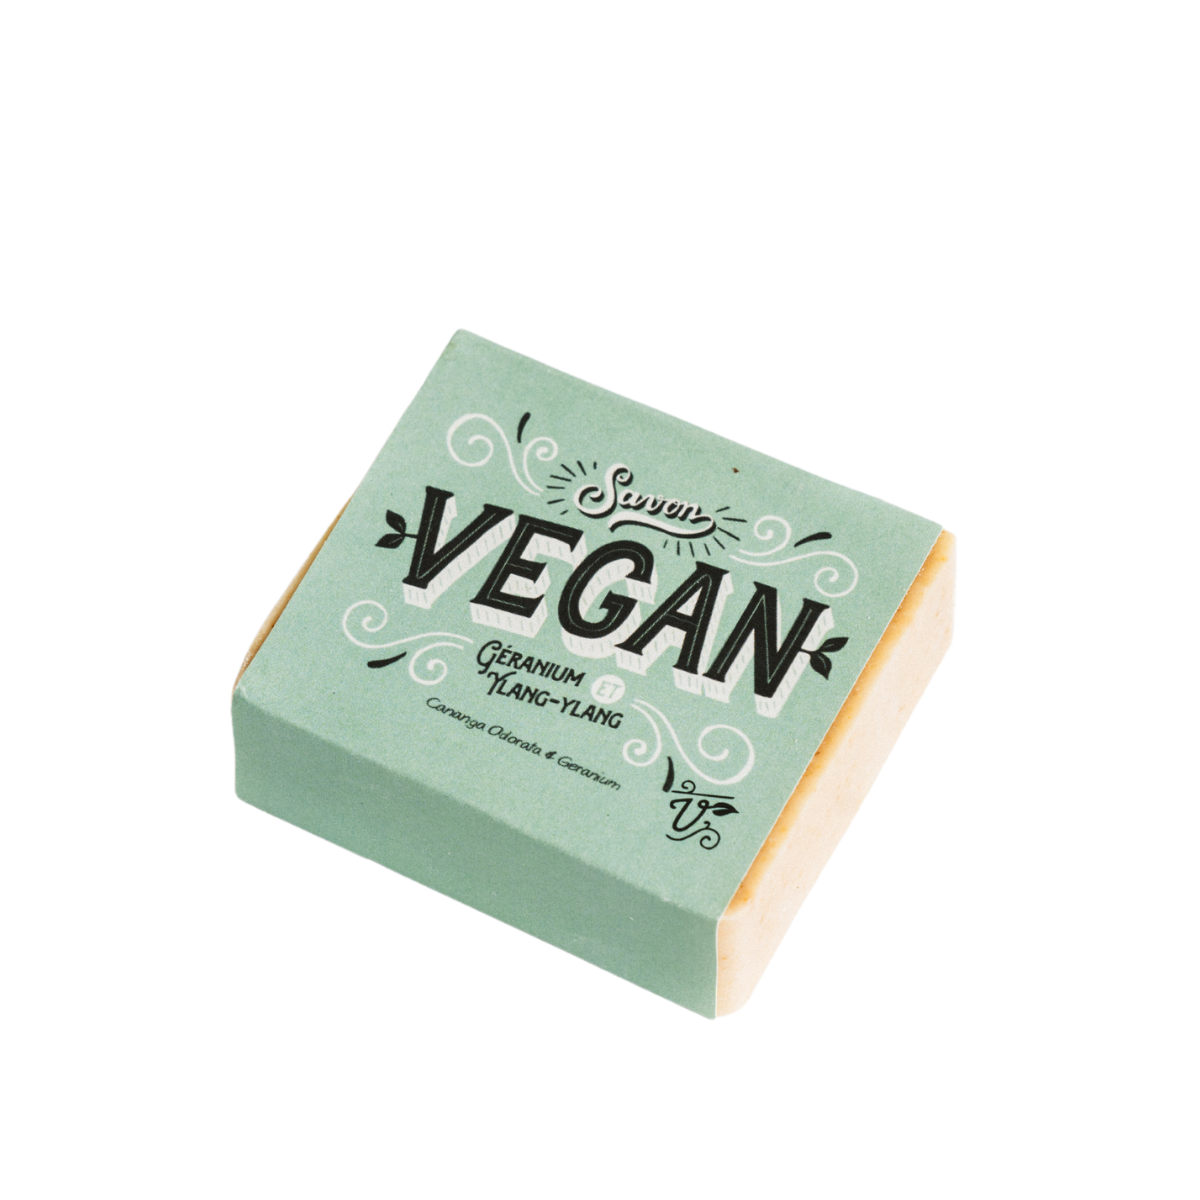 Vegan Soap - Geranium and Ylang-Ylang